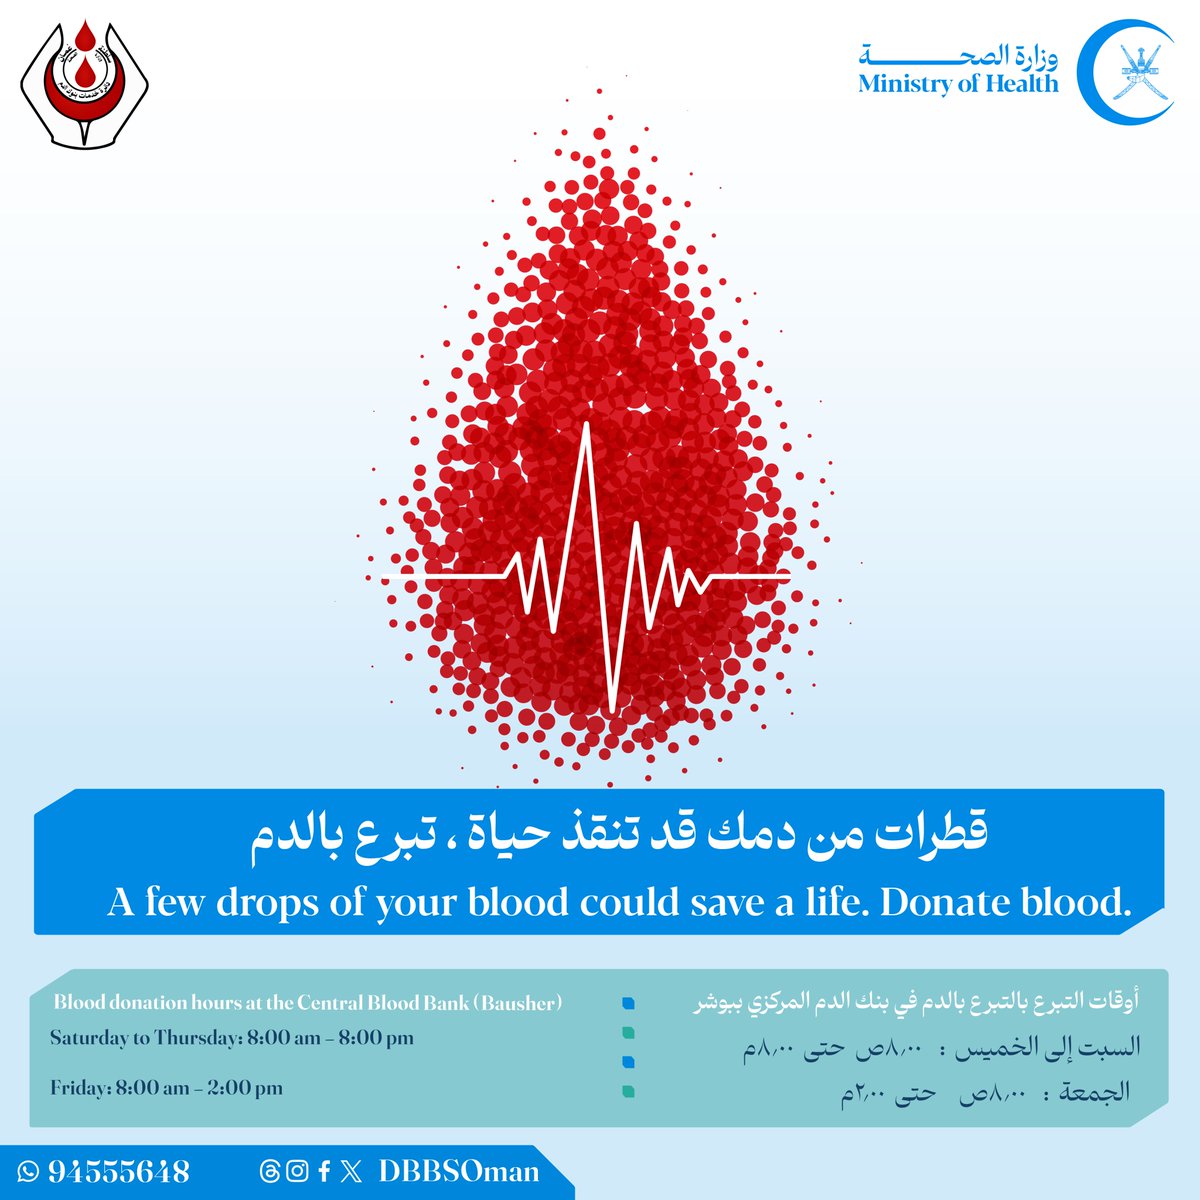 قطرات من دمك قد تنقذ حياة ، #تبرع_بالدم A few drops of your blood could save a life. Donate blood.